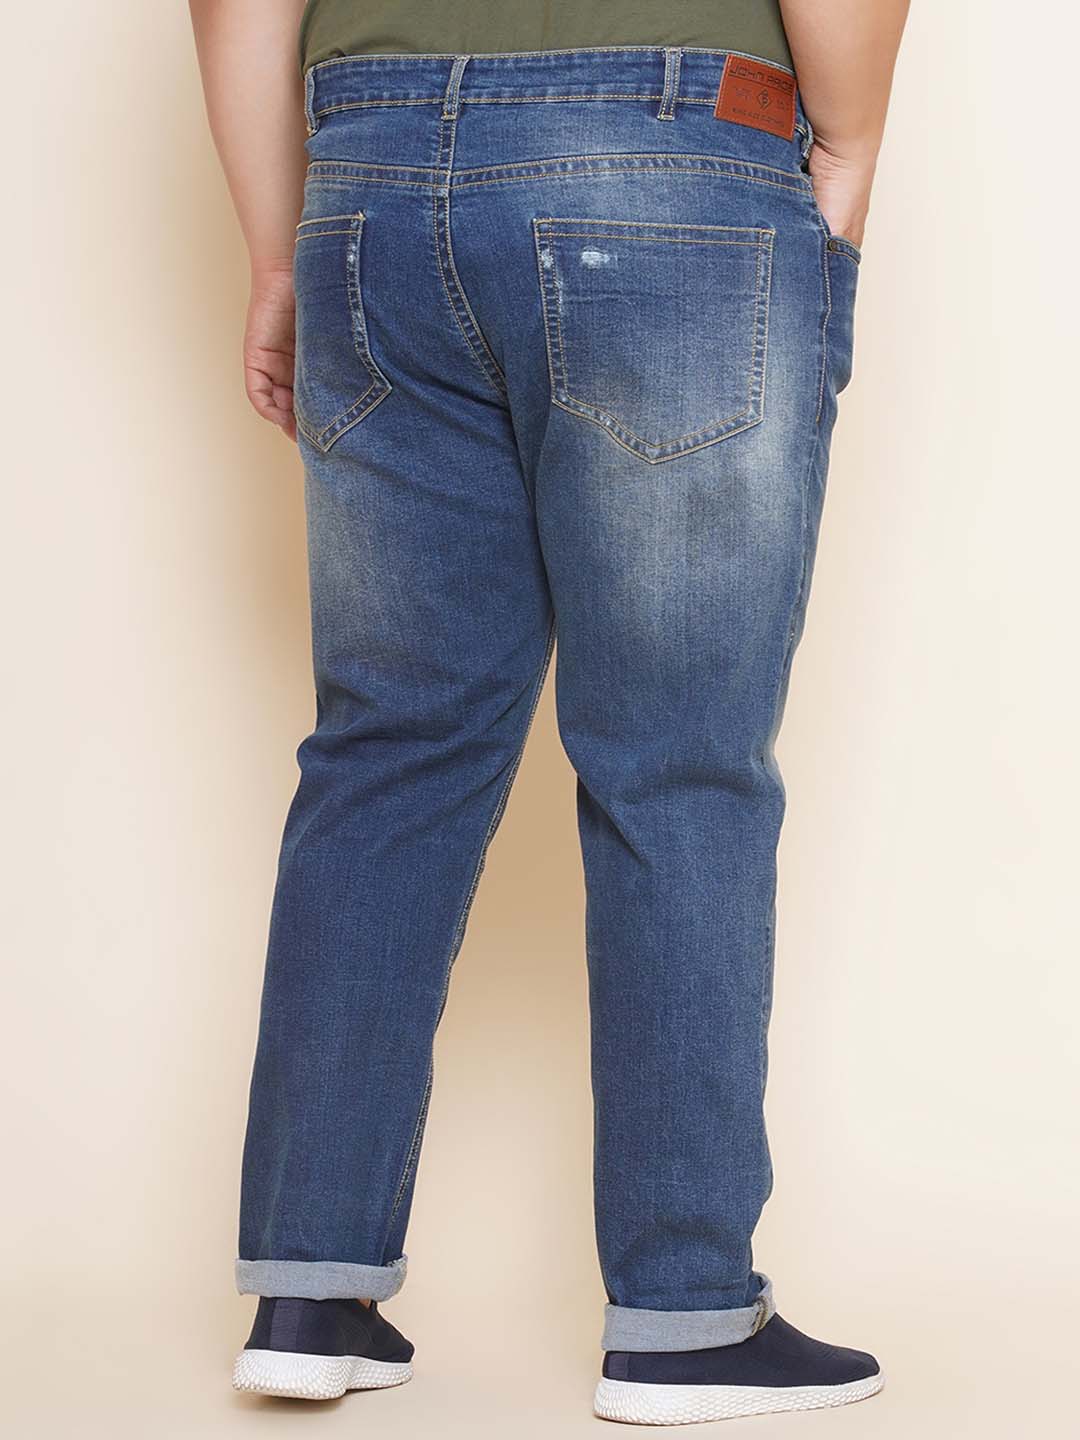 bottomwear/jeans/JPJ27063/jpj27063-5.jpg